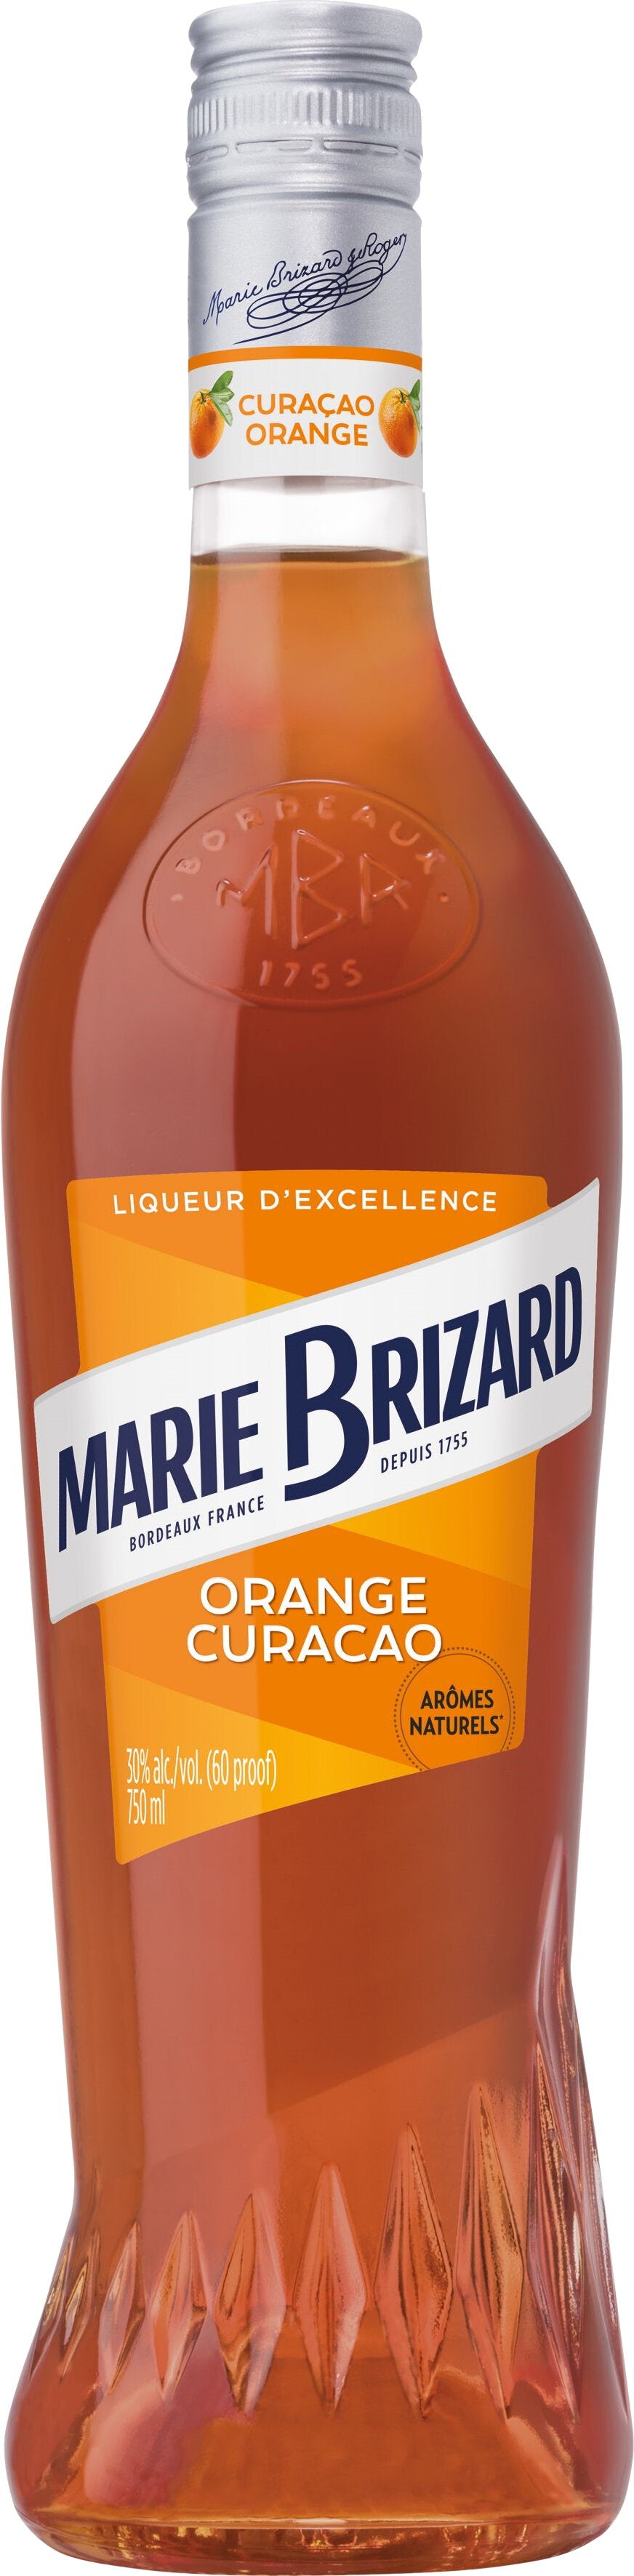 Marie Brizard Orange Curaçao